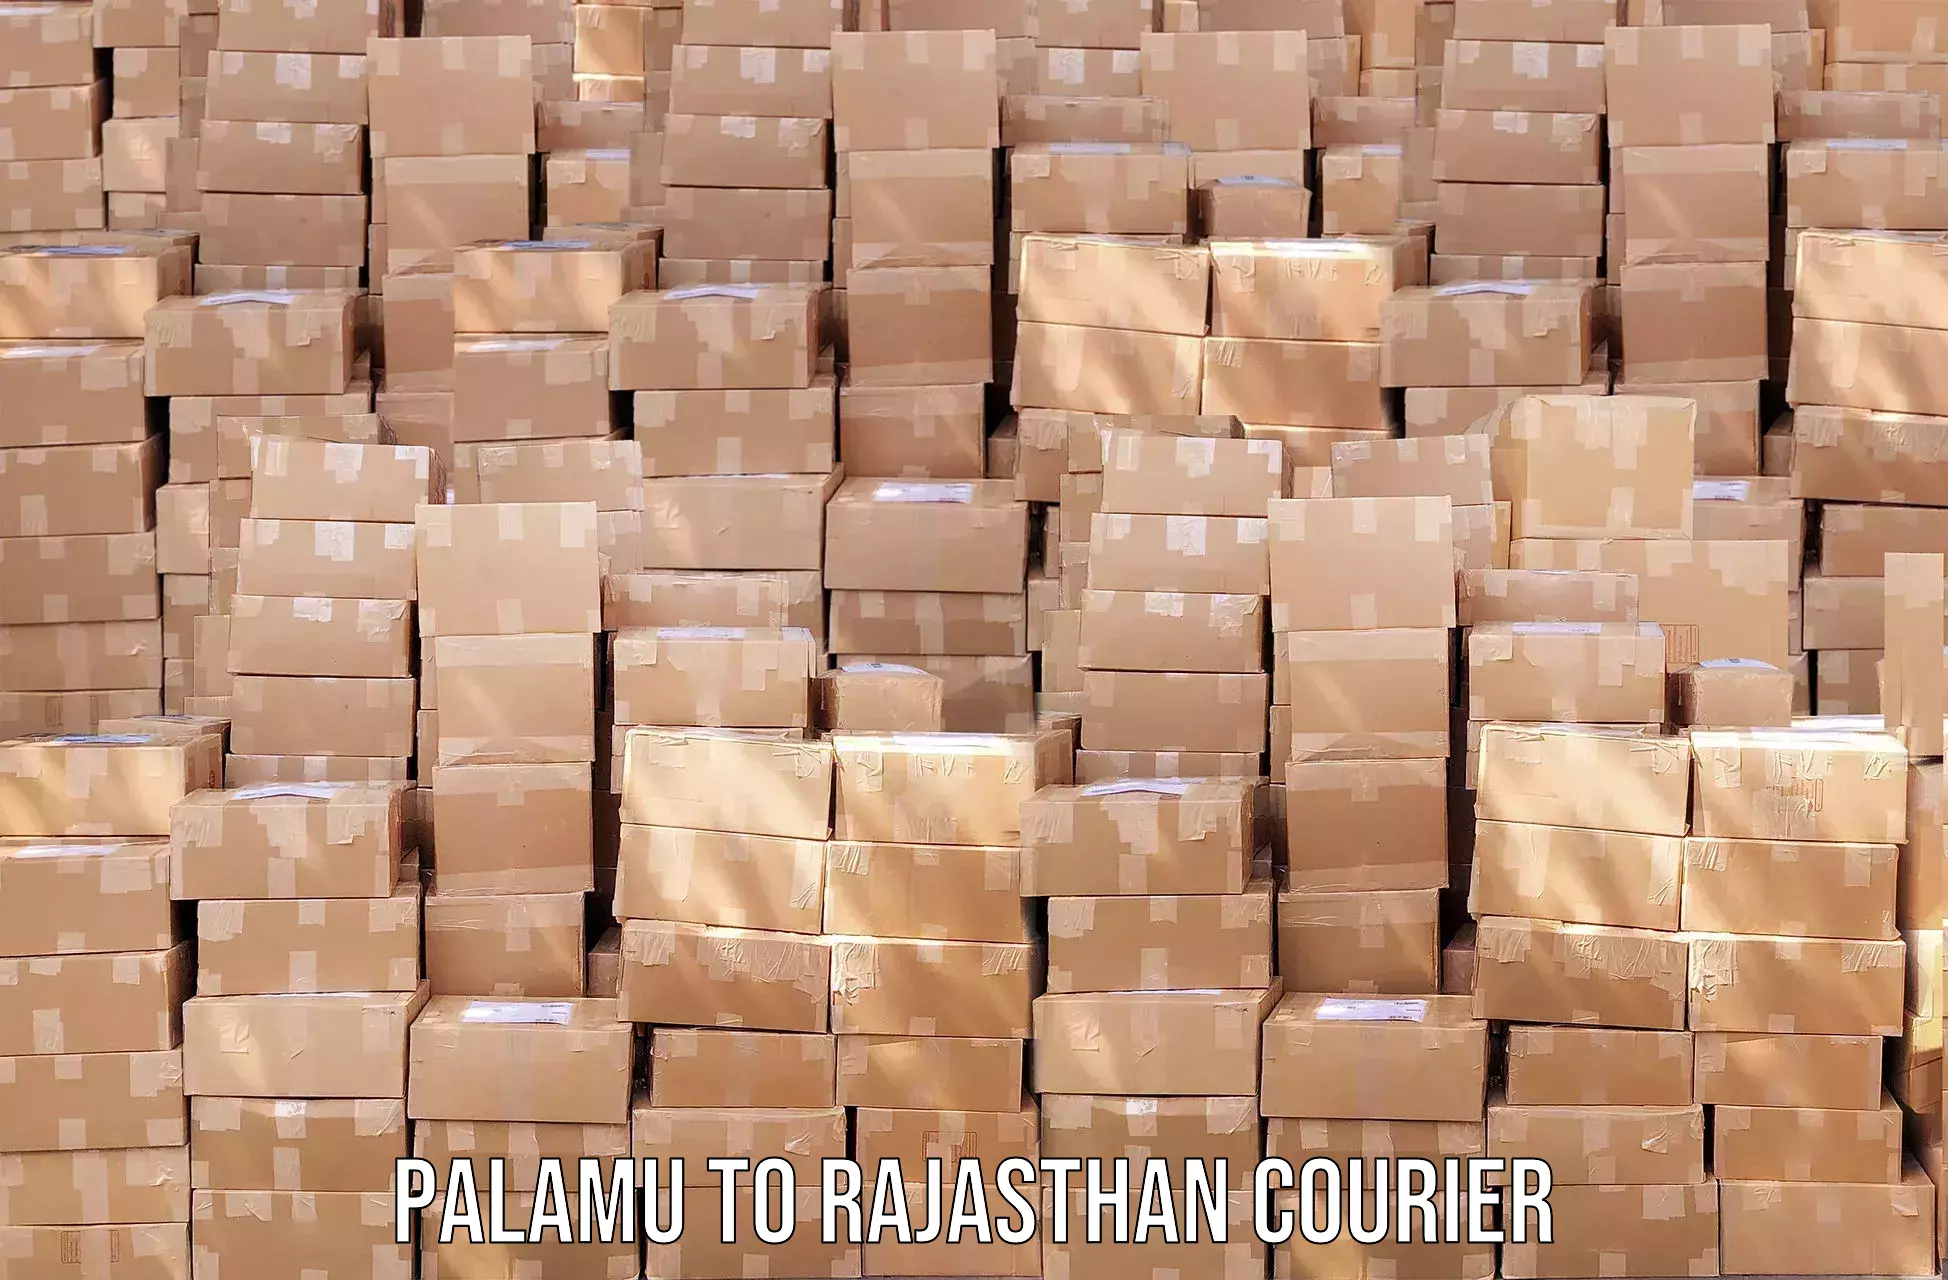 High-capacity shipping options Palamu to Mathania